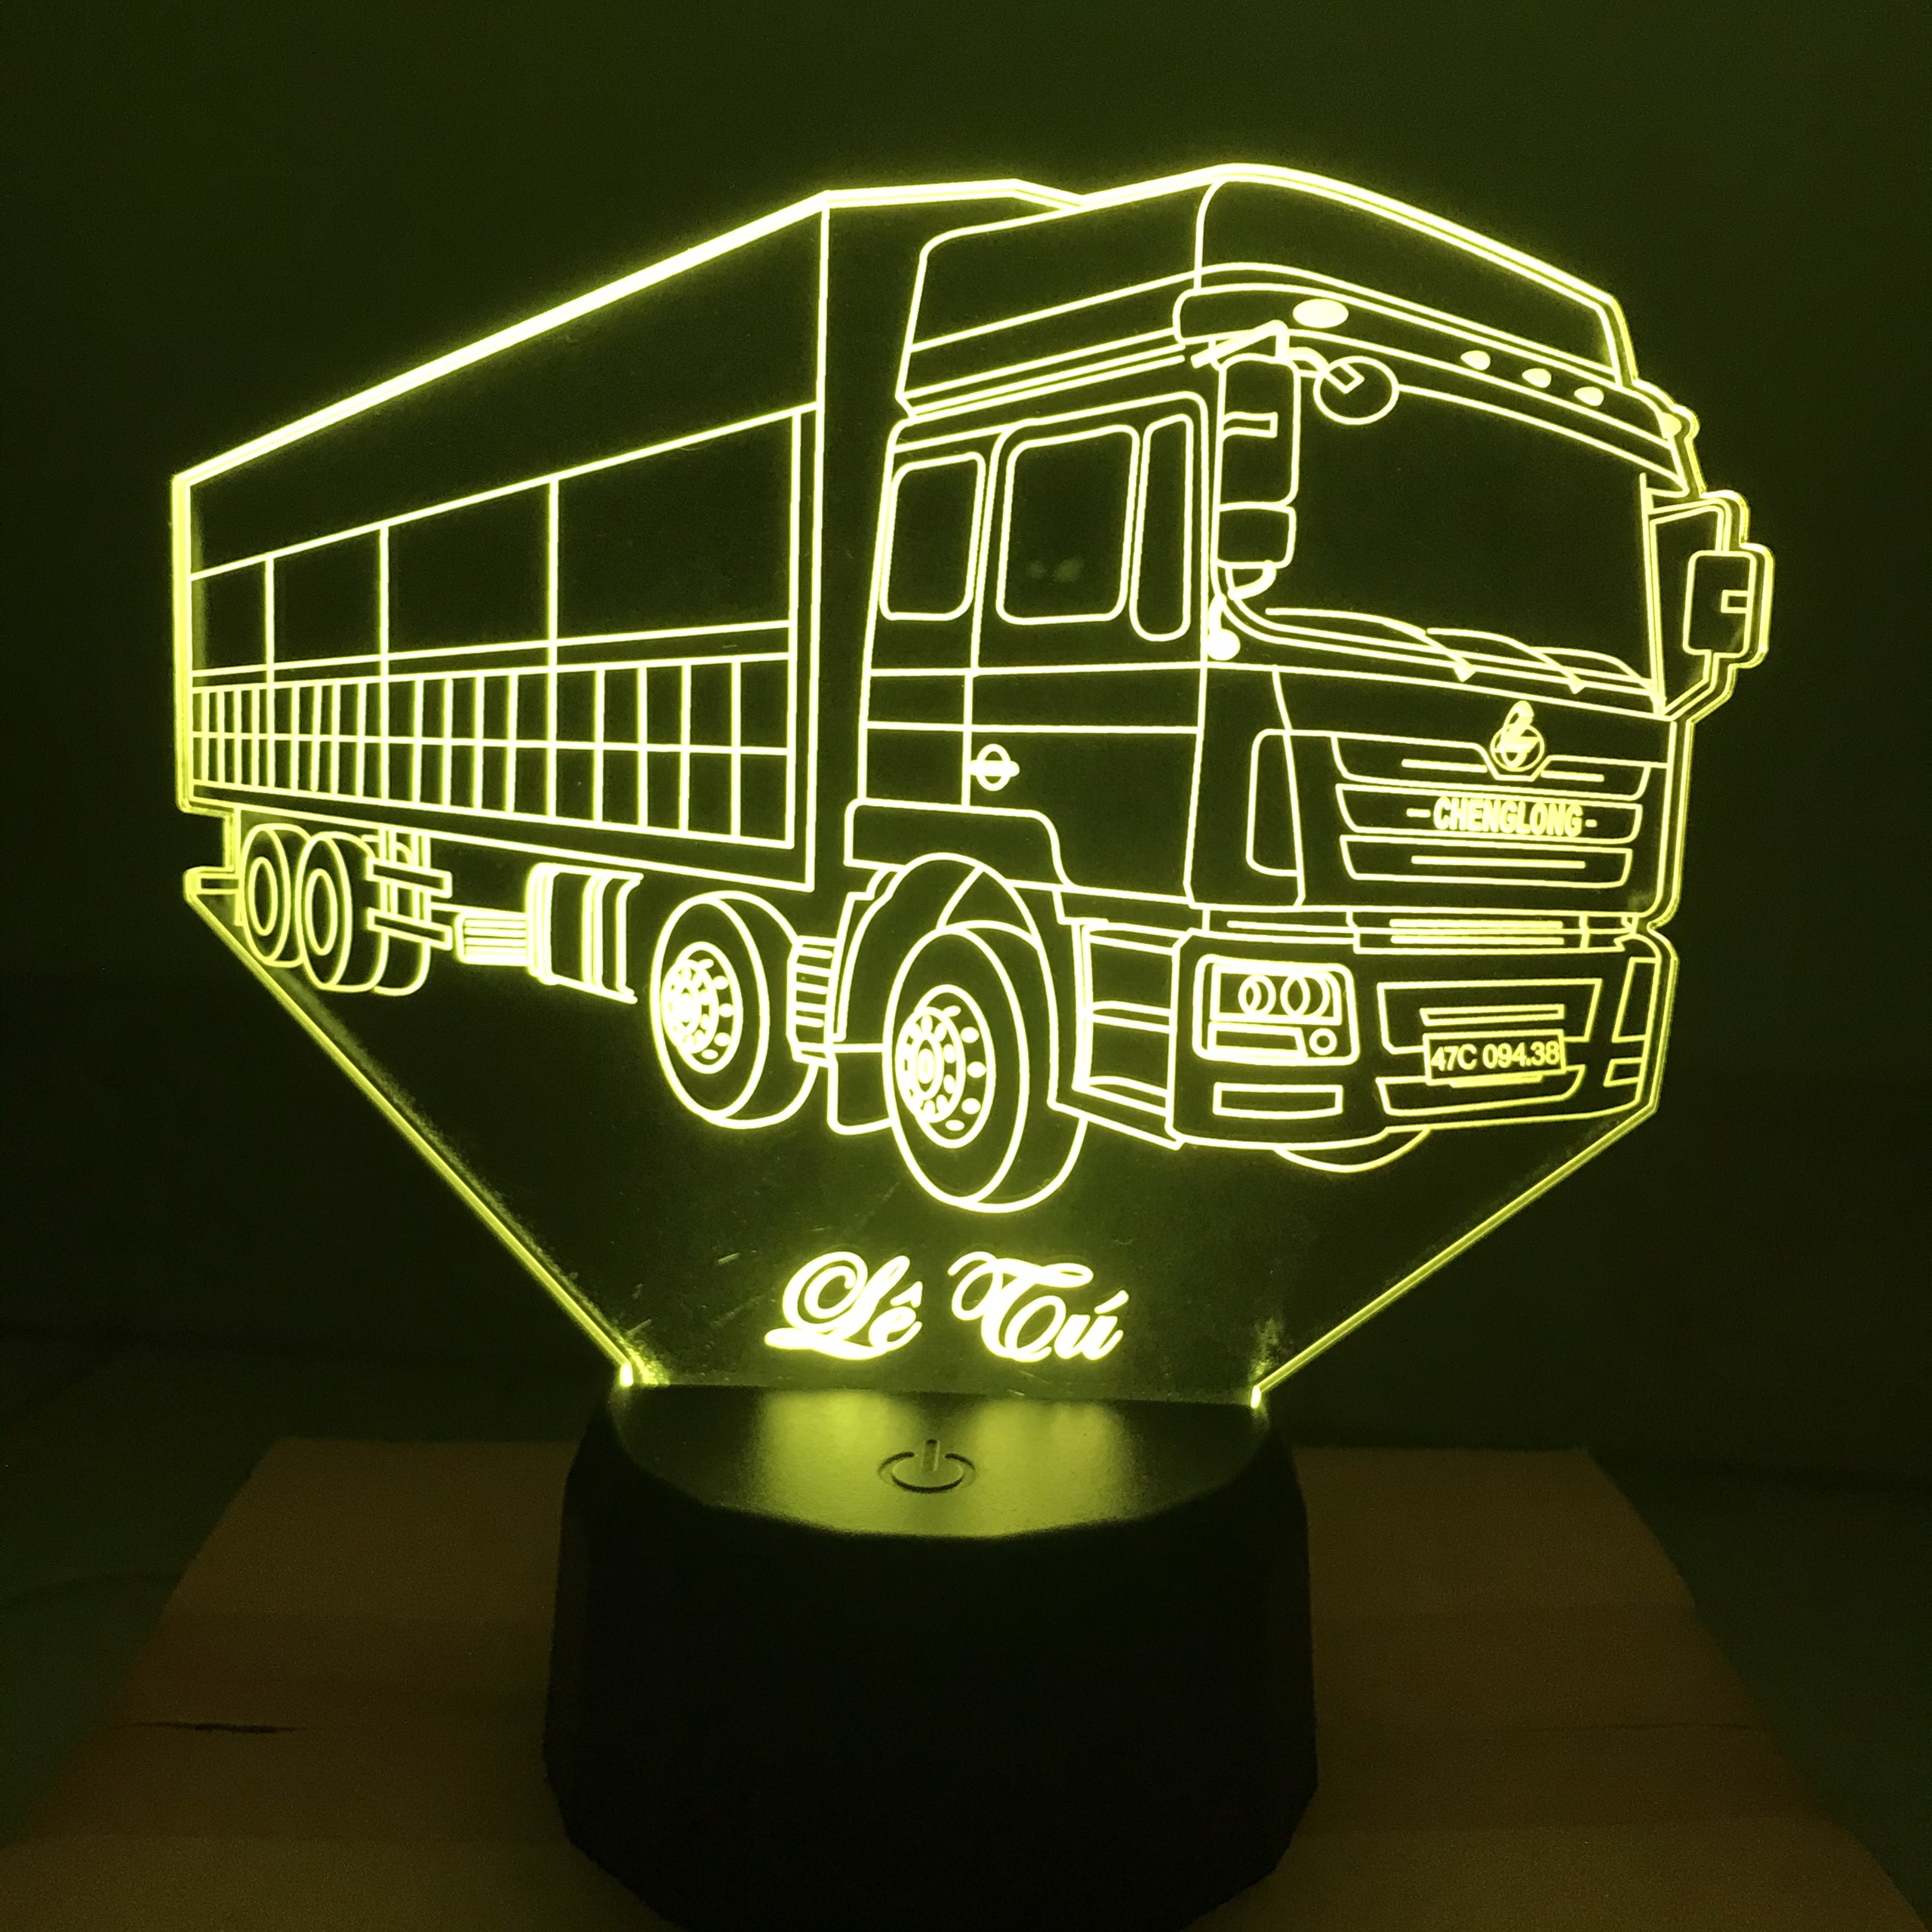 Đèn trang trí xe tải là một trong những phụ kiện không thể thiếu của xe tải. Hãy cùng xem những hình ảnh về đèn trang trí xe tải trong bài viết này để tìm hiểu cách trang trí xe tải sao cho đẹp và độc đáo nhất.